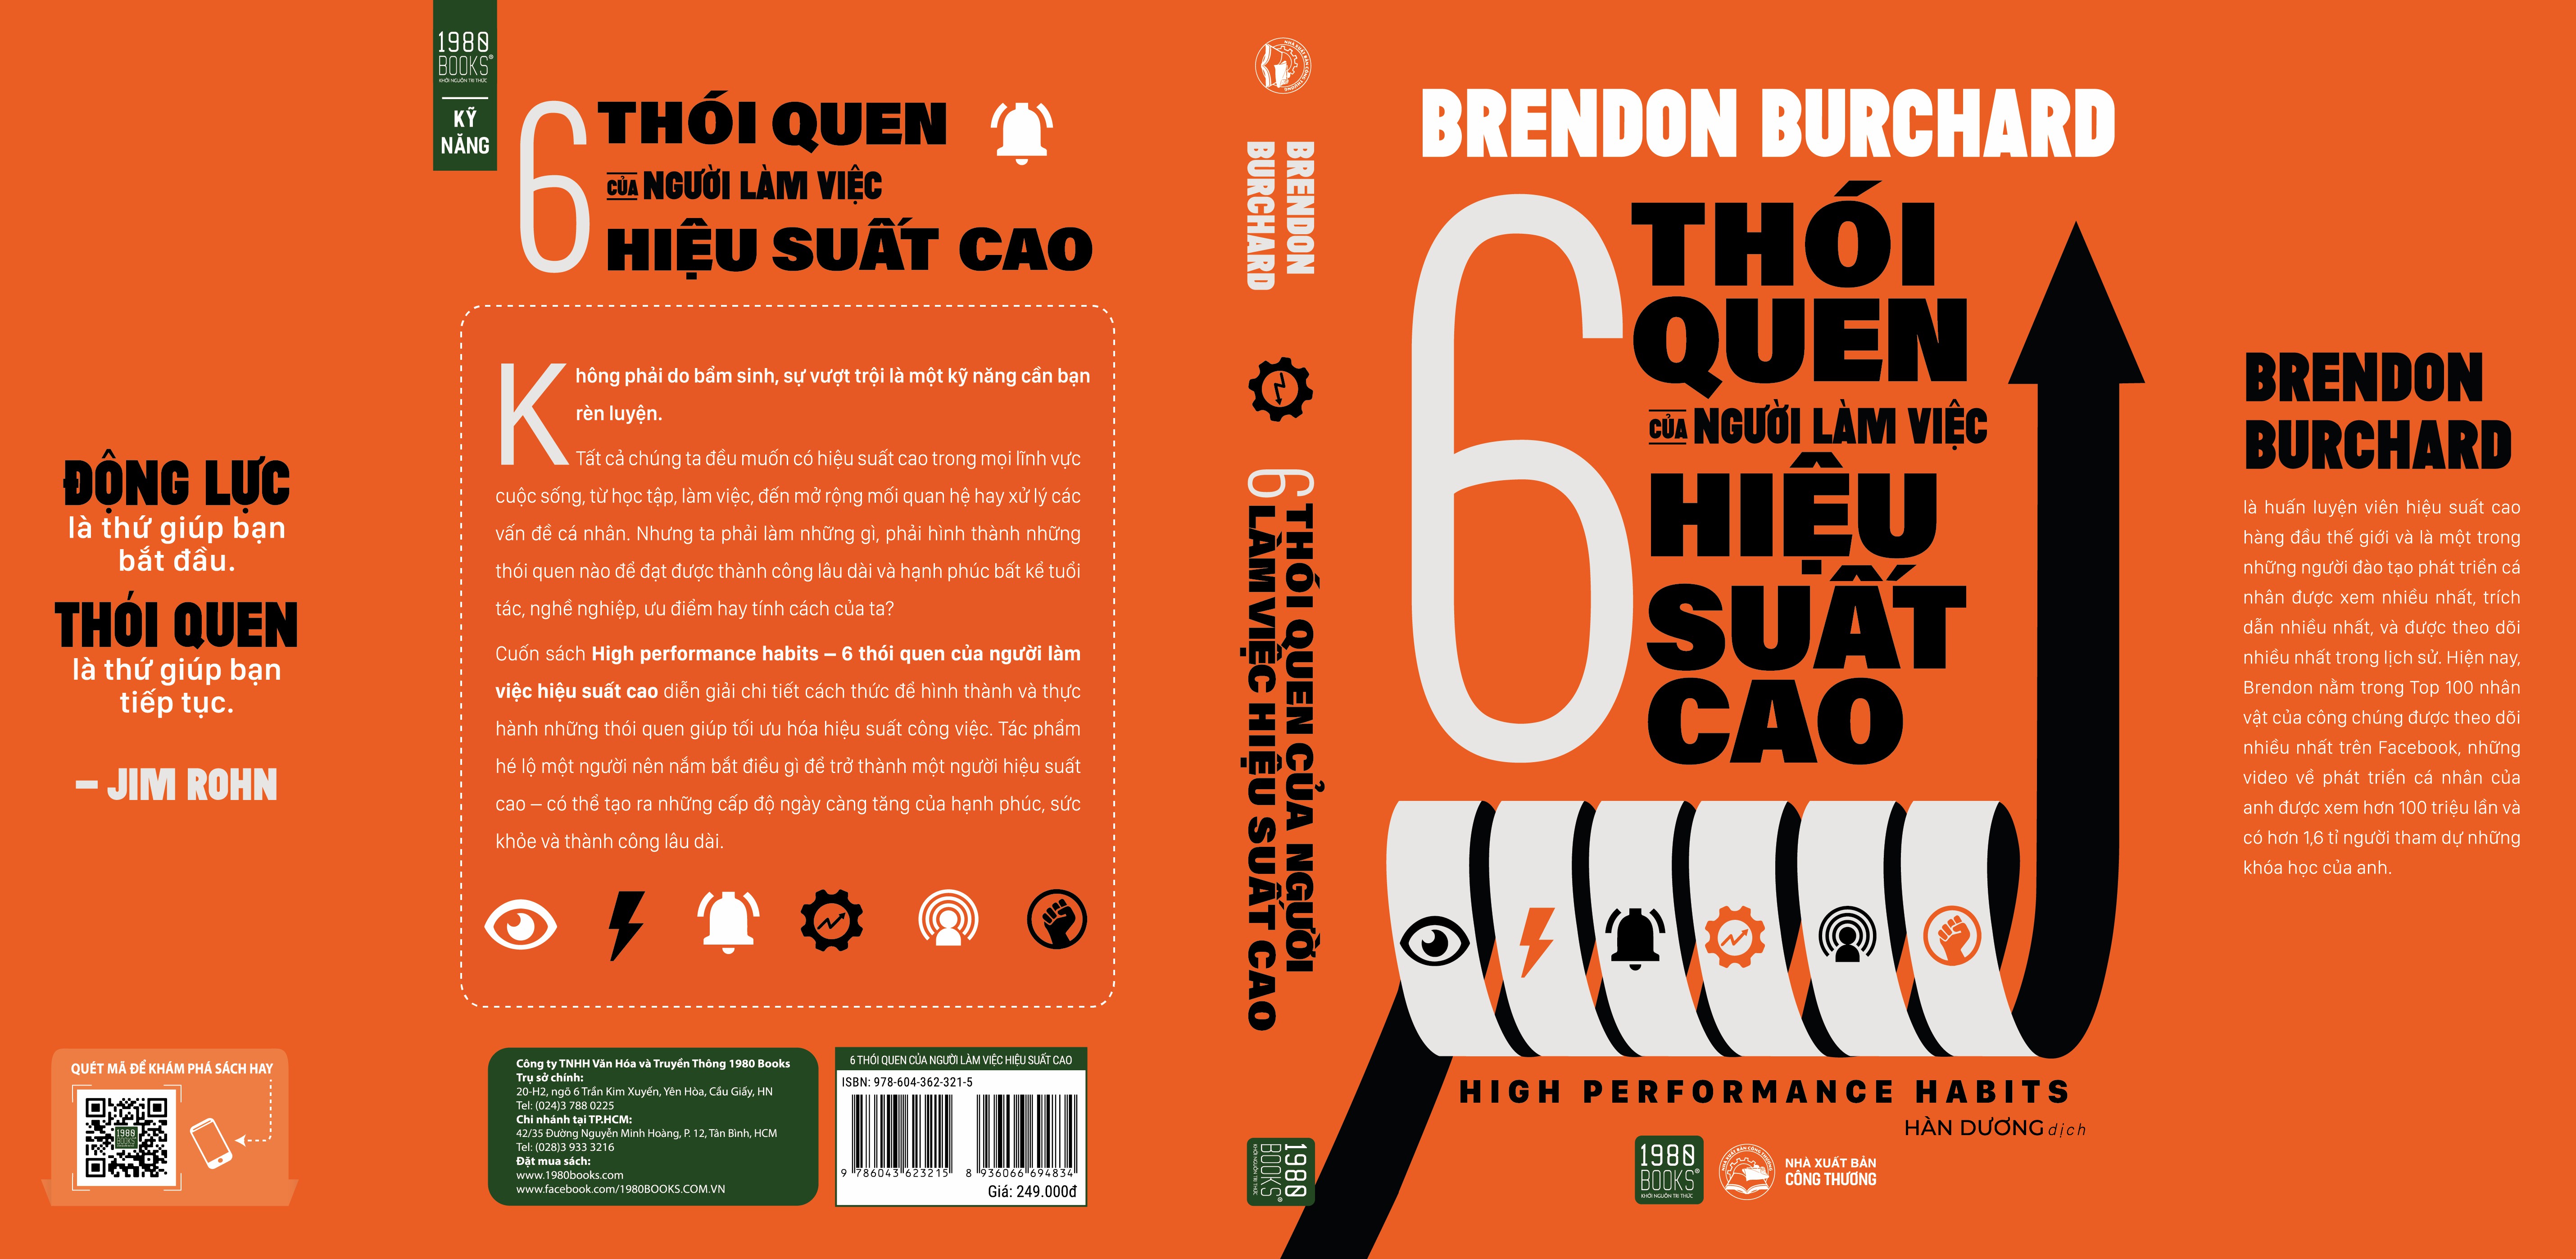 High performance habits – 6 thói quen của người làm việc hiệu suất cao - Brendon Burchard (TTR Bookstore)